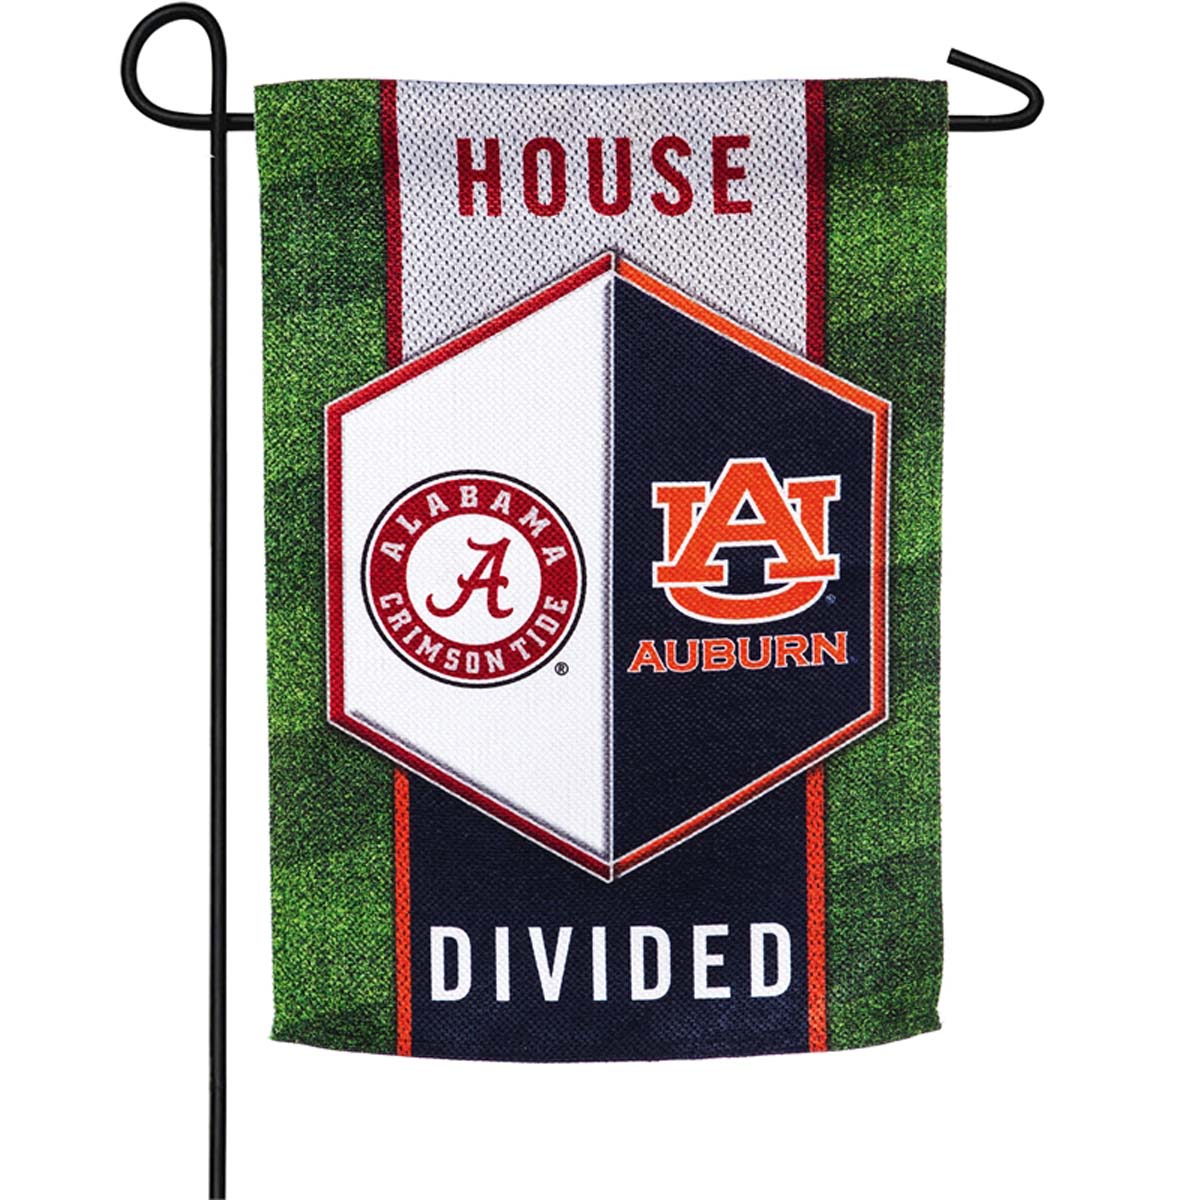 Alabama & Auburn "House Divided" Garden Flag